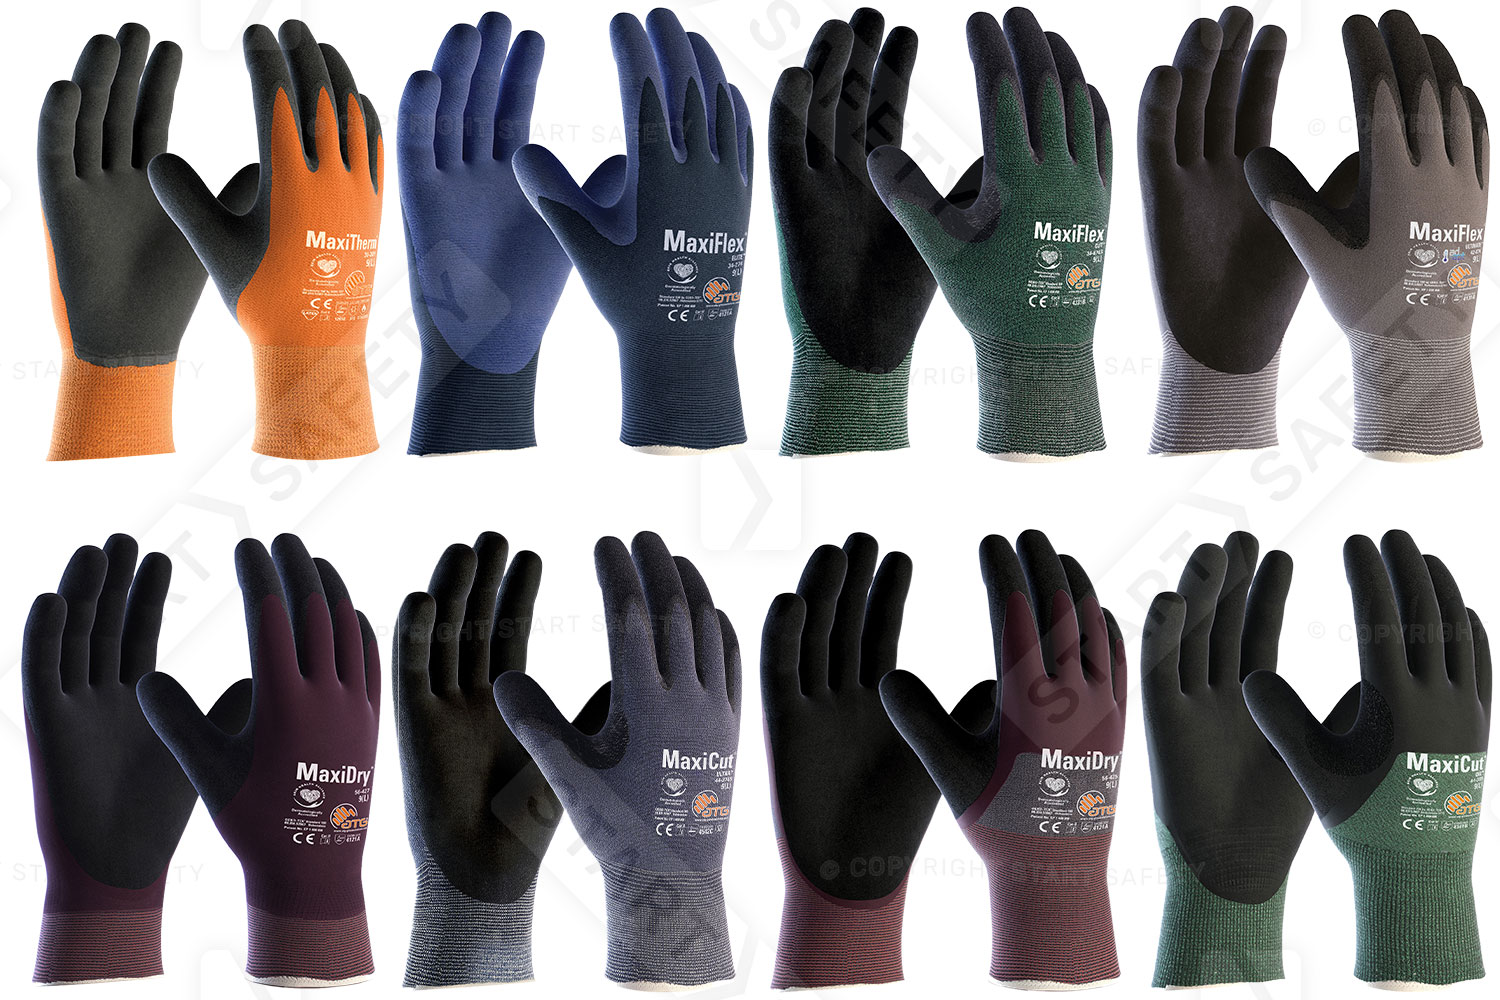 ATG Safety Glove Range